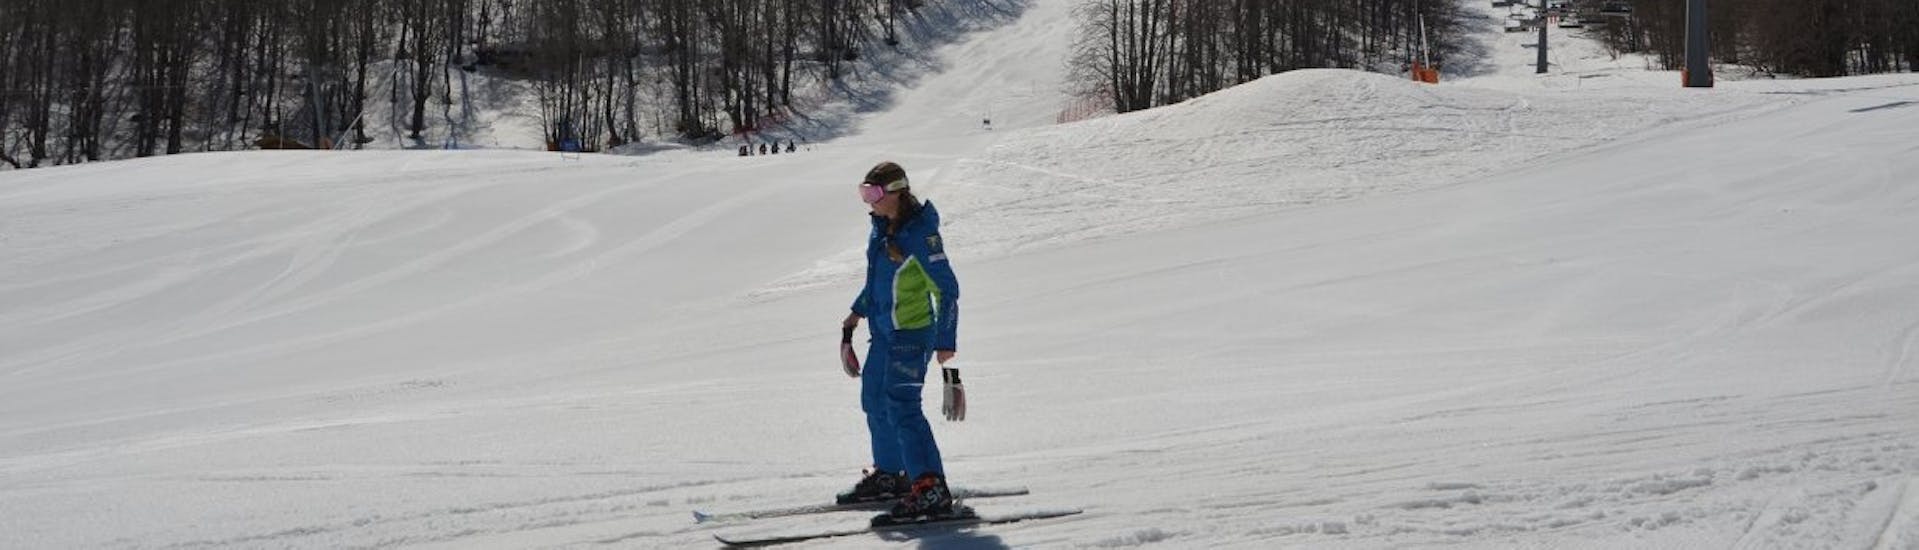 Clases de esquí privadas para adultos a partir de 15 años para todos los niveles.